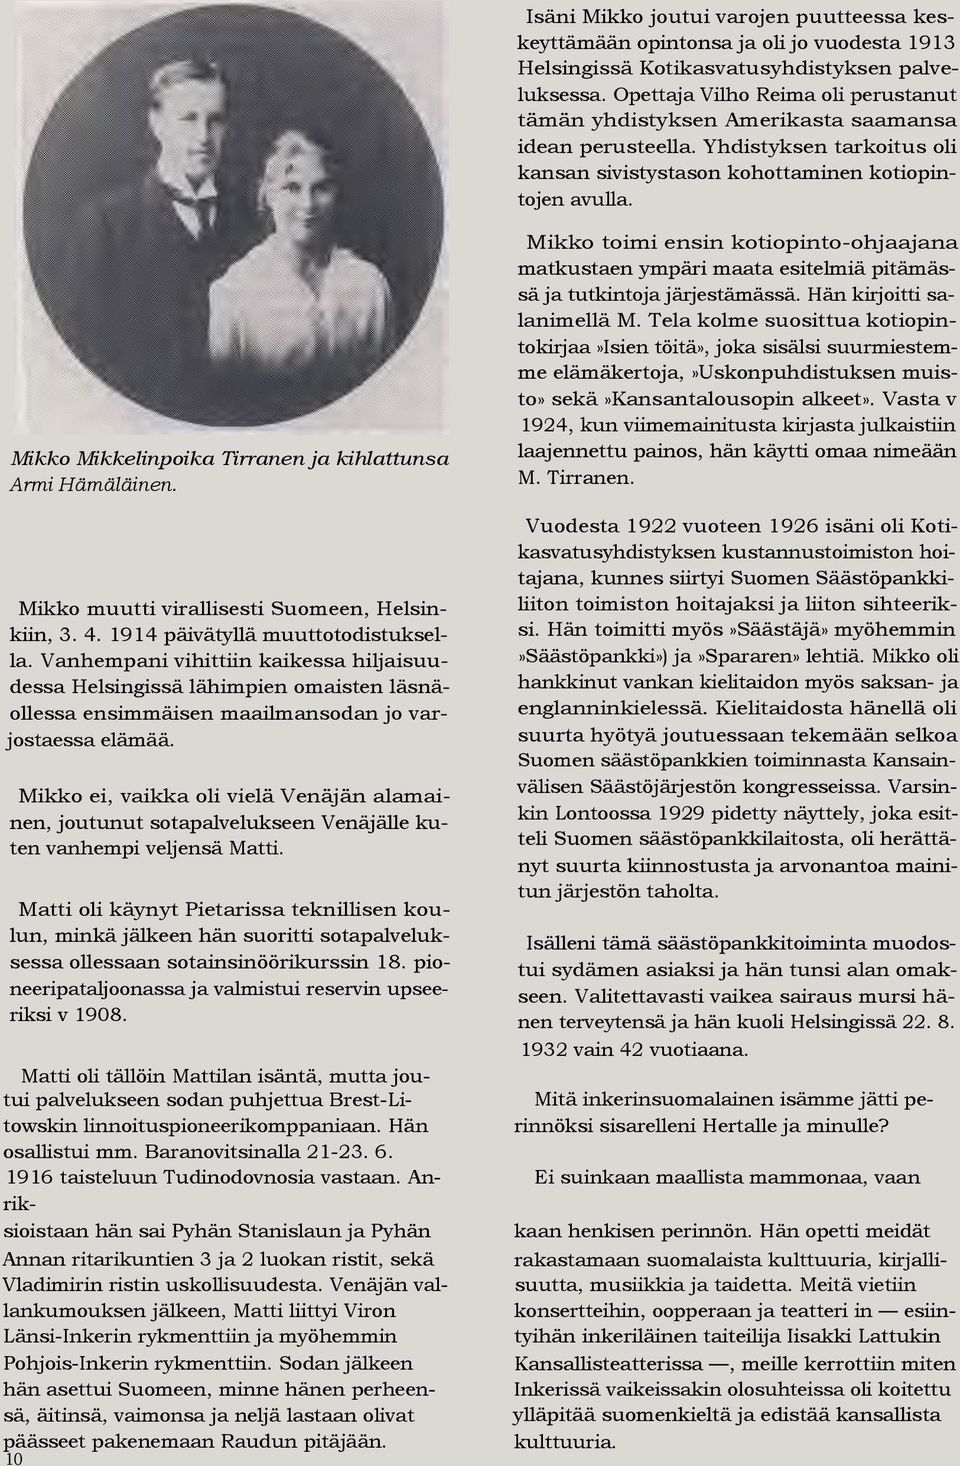 Mikko Mikkelinpoika Tirranen ja kihlattunsa Armi Hämäläinen. Mikko toimi ensin kotiopinto-ohjaajana matkustaen ympäri maata esitelmiä pitämässä ja tutkintoja järjestämässä.